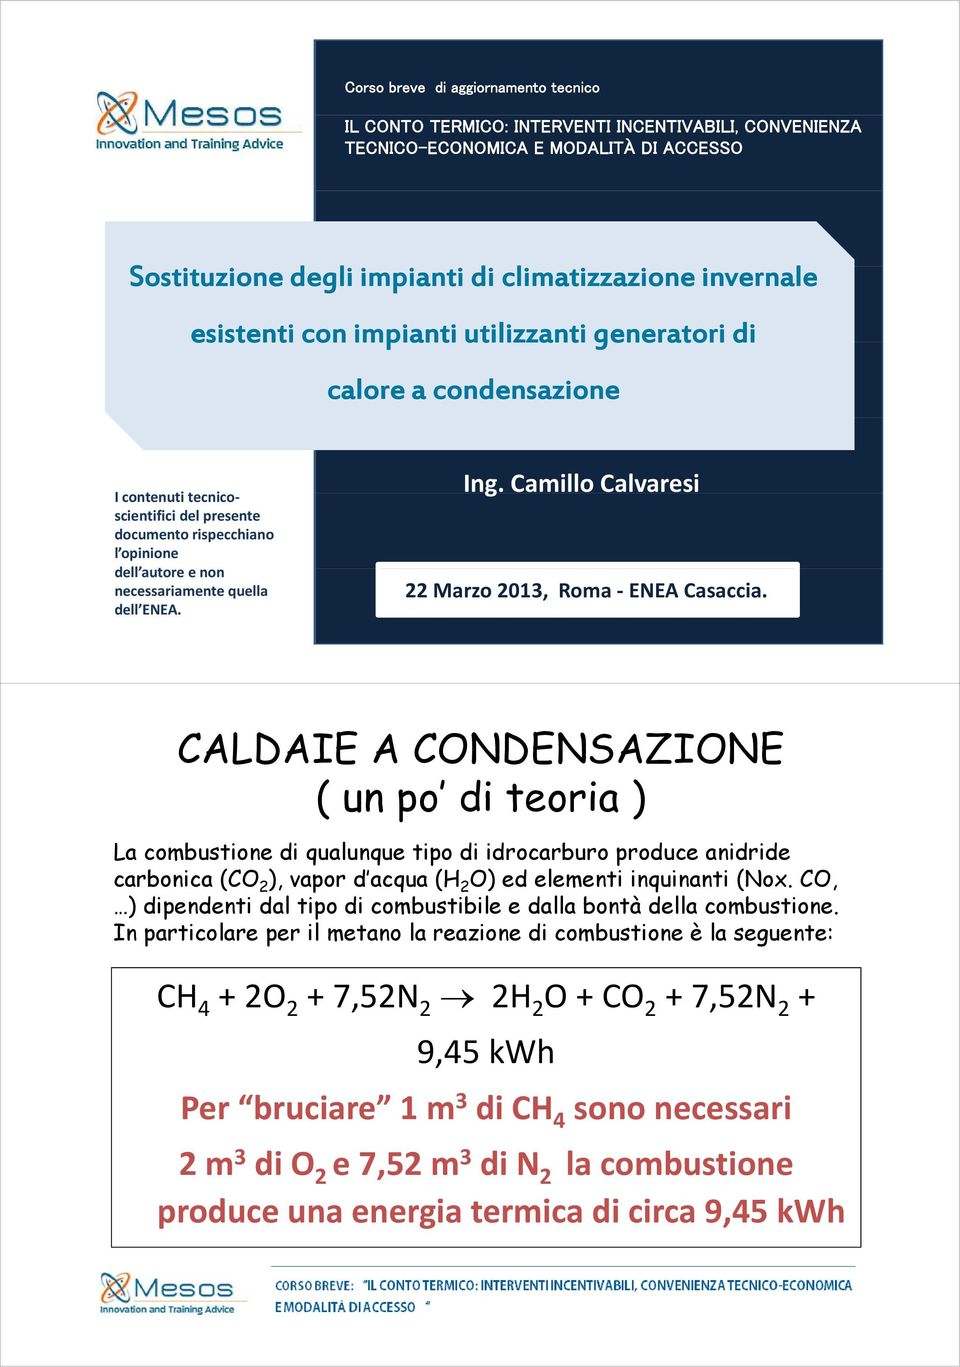 Camillo Calvaresi I contenuti titecnico scientifici del presente documento rispecchiano l opinione dell autore e non necessariamente quella dell ENEA. 22 Marzo 2013, Roma ENEA Casaccia.